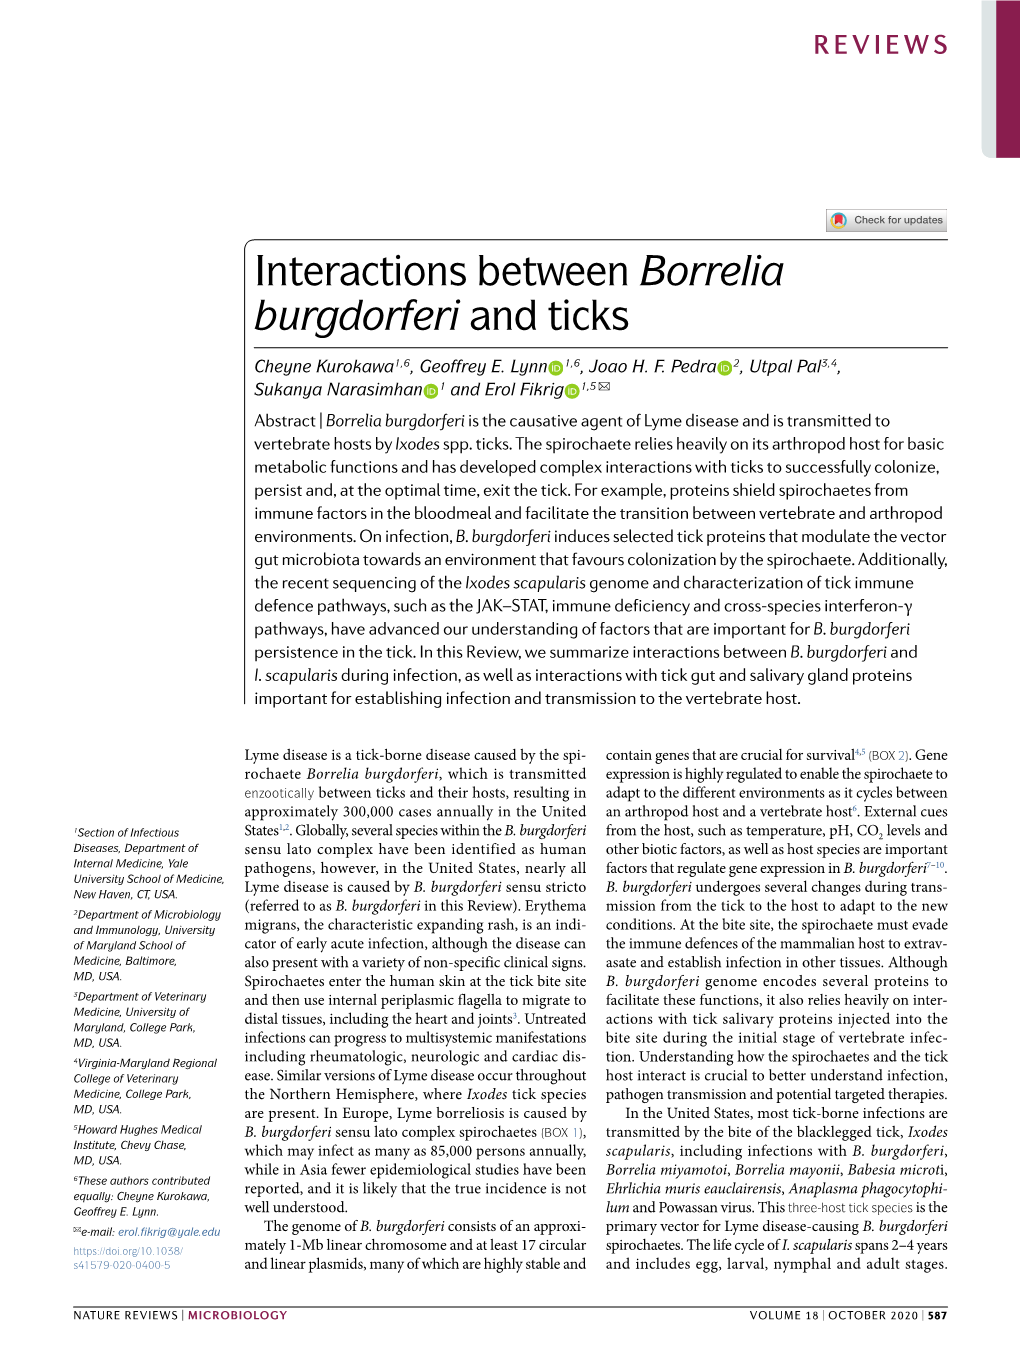 Interactions Between Borrelia Burgdorferi and Ticks